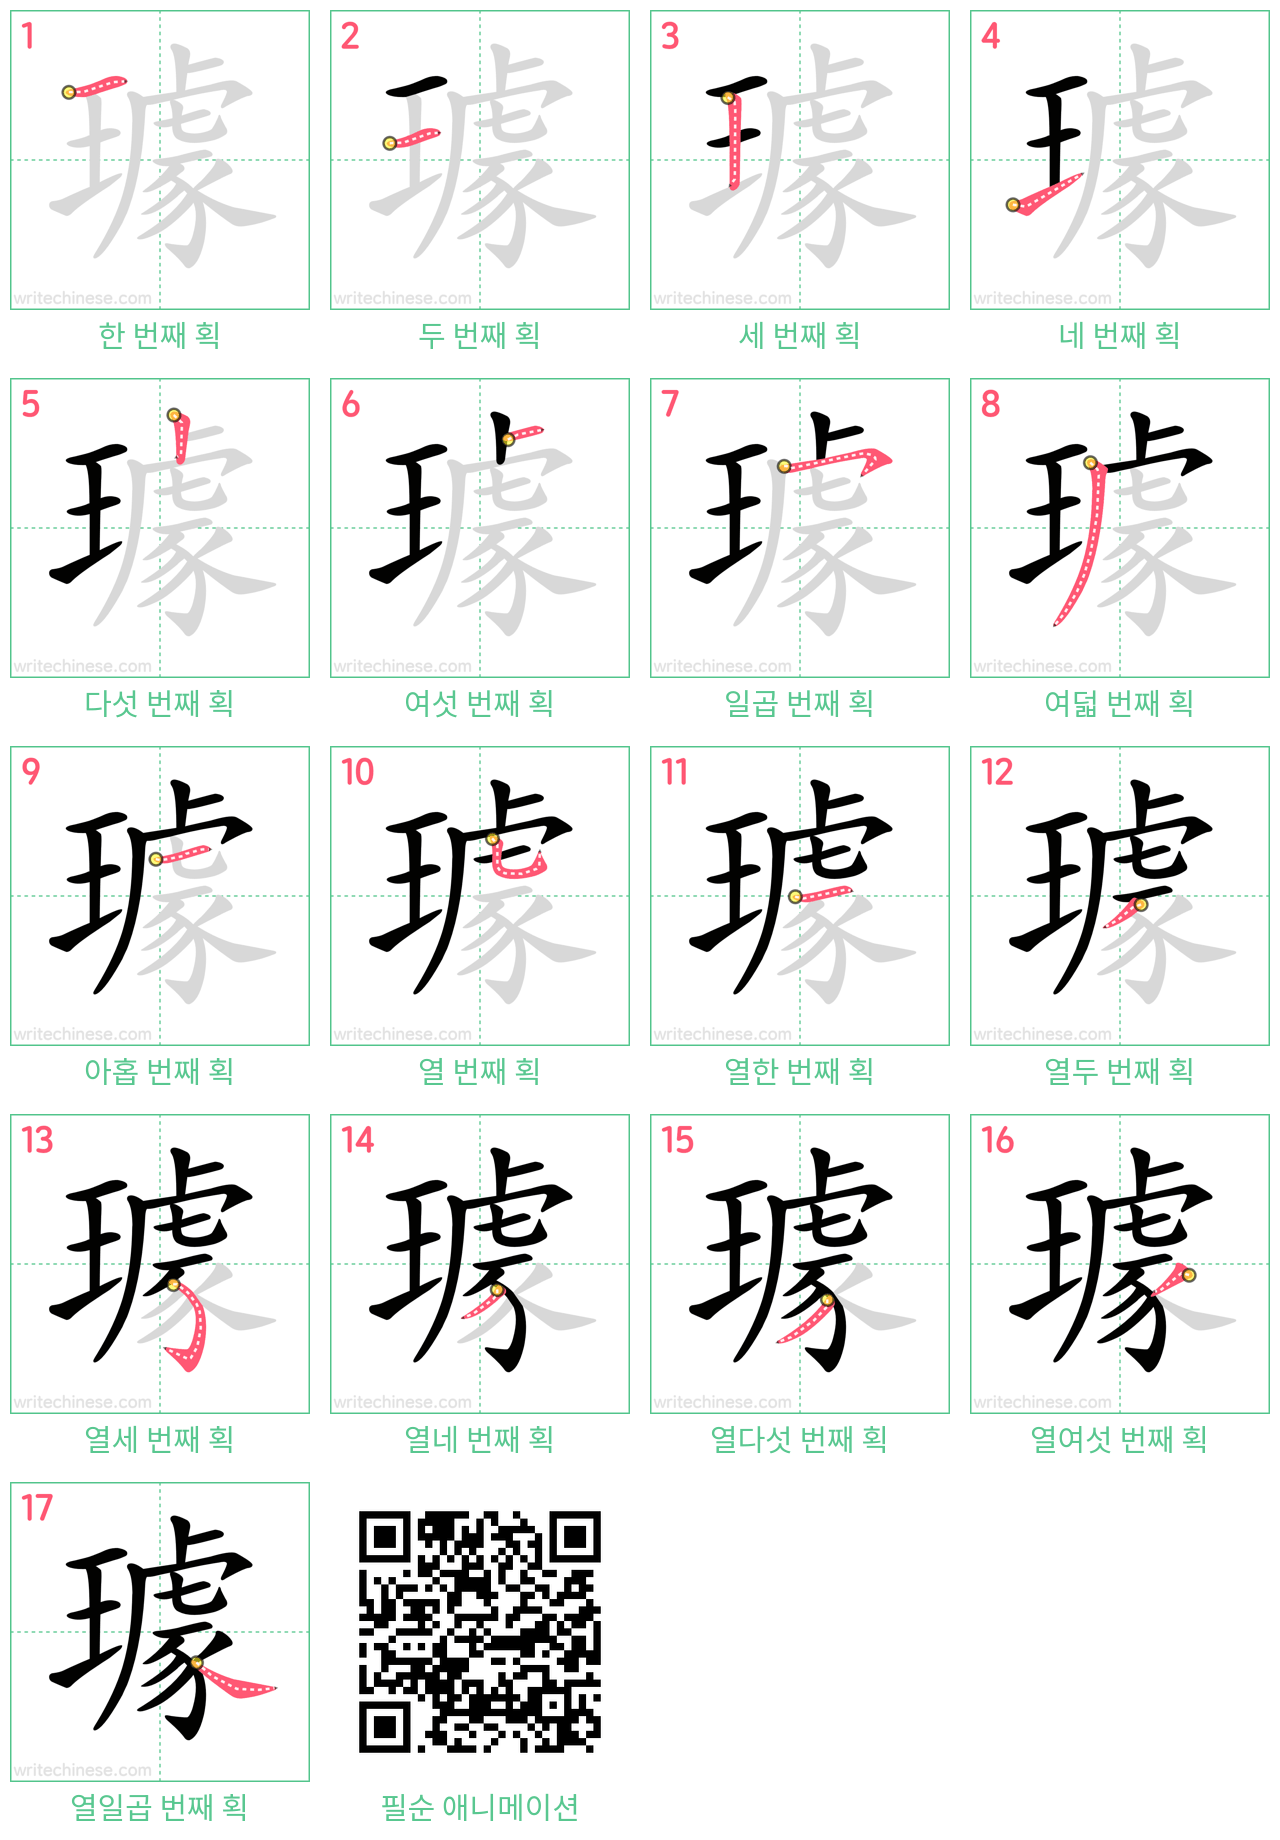 璩 step-by-step stroke order diagrams